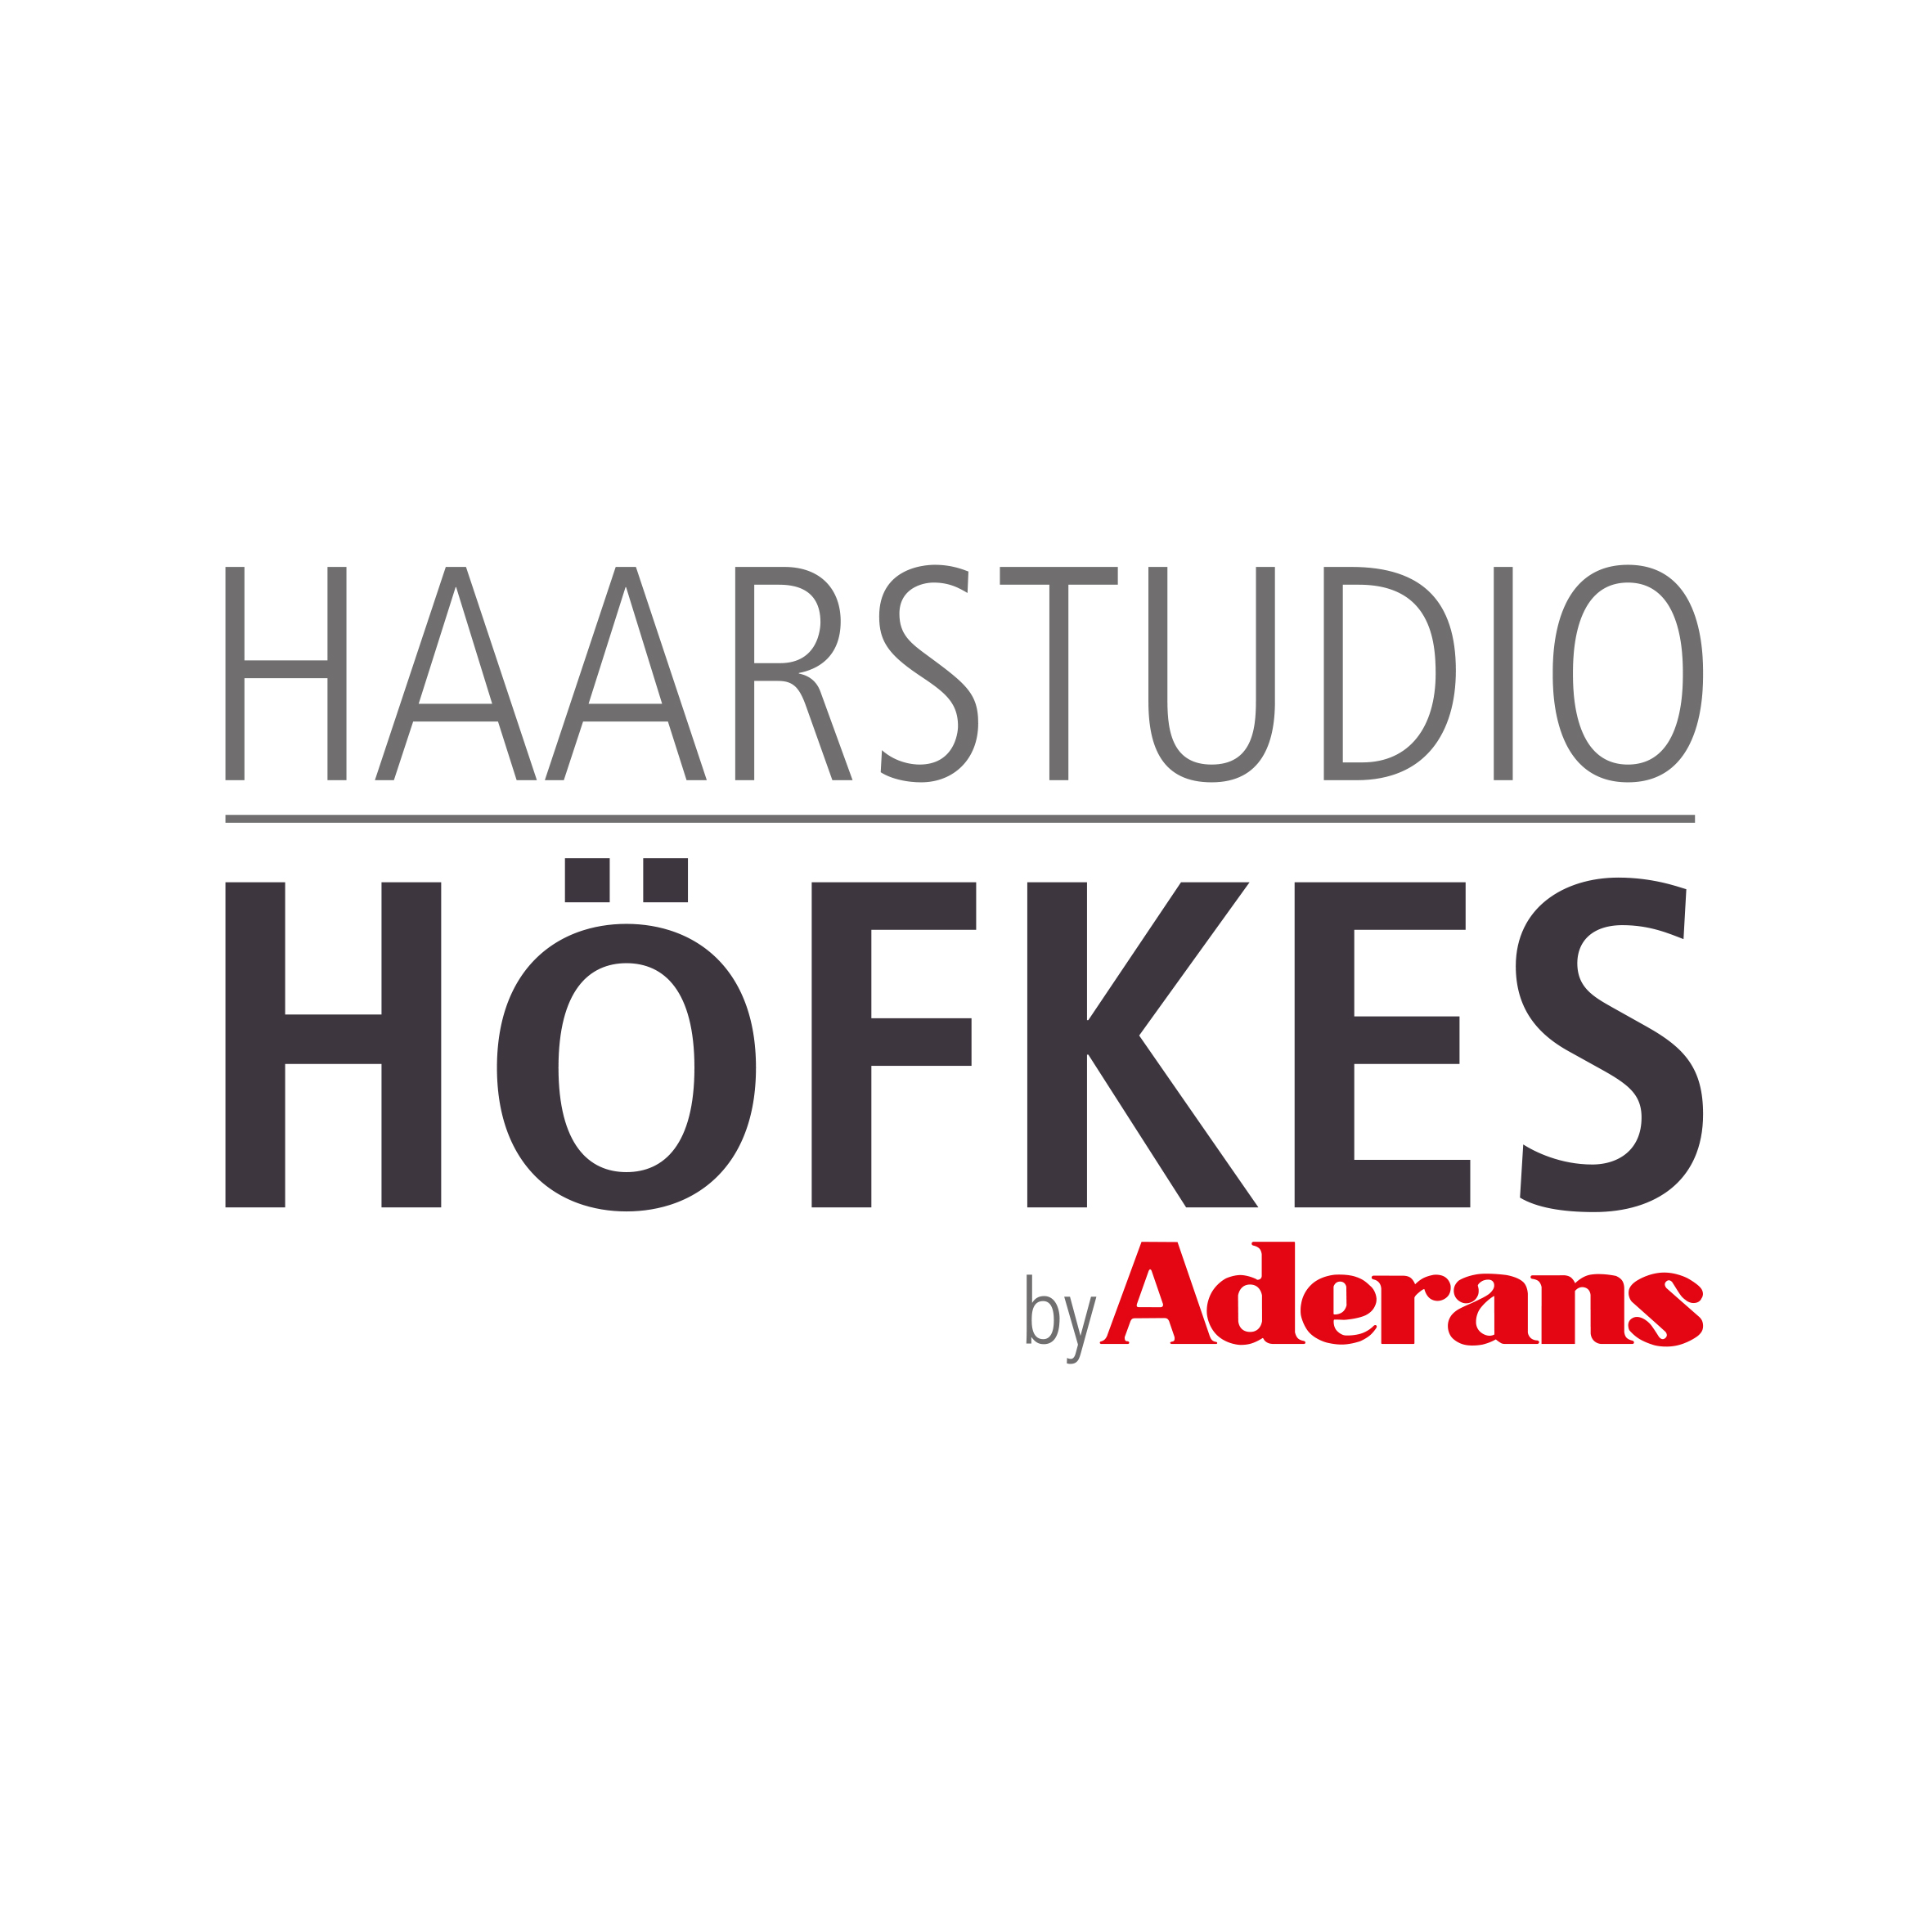 Haarstudio Höfkes by Aderans